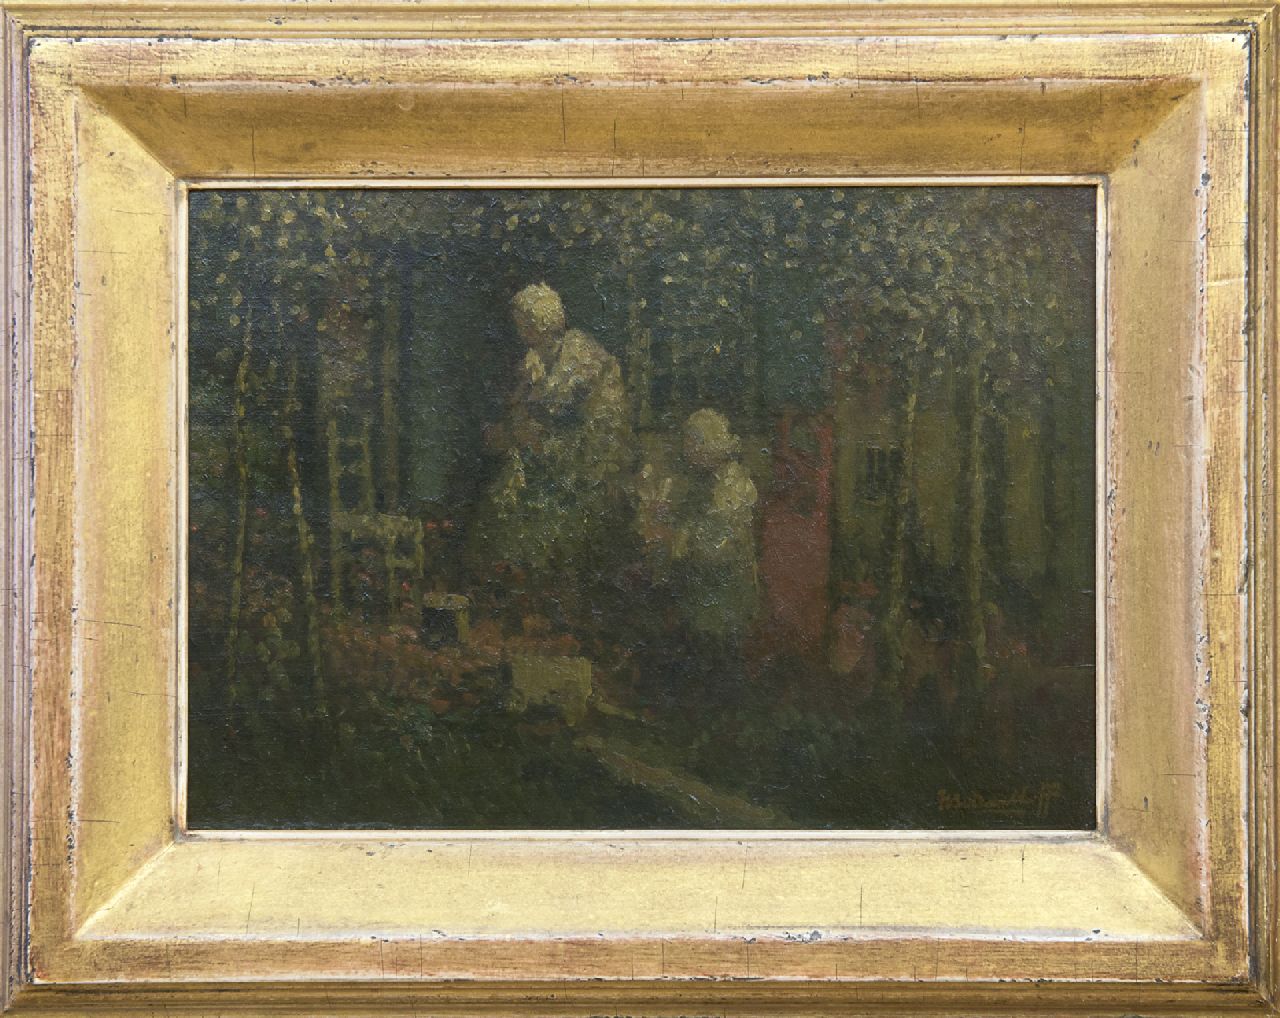 Daalhoff H.A. van | Hermanus Antonius 'Henri' van Daalhoff | Schilderijen te koop aangeboden | Pinkstermorgen, olieverf op doek 25,4 x 35,5 cm, gesigneerd rechtsonder